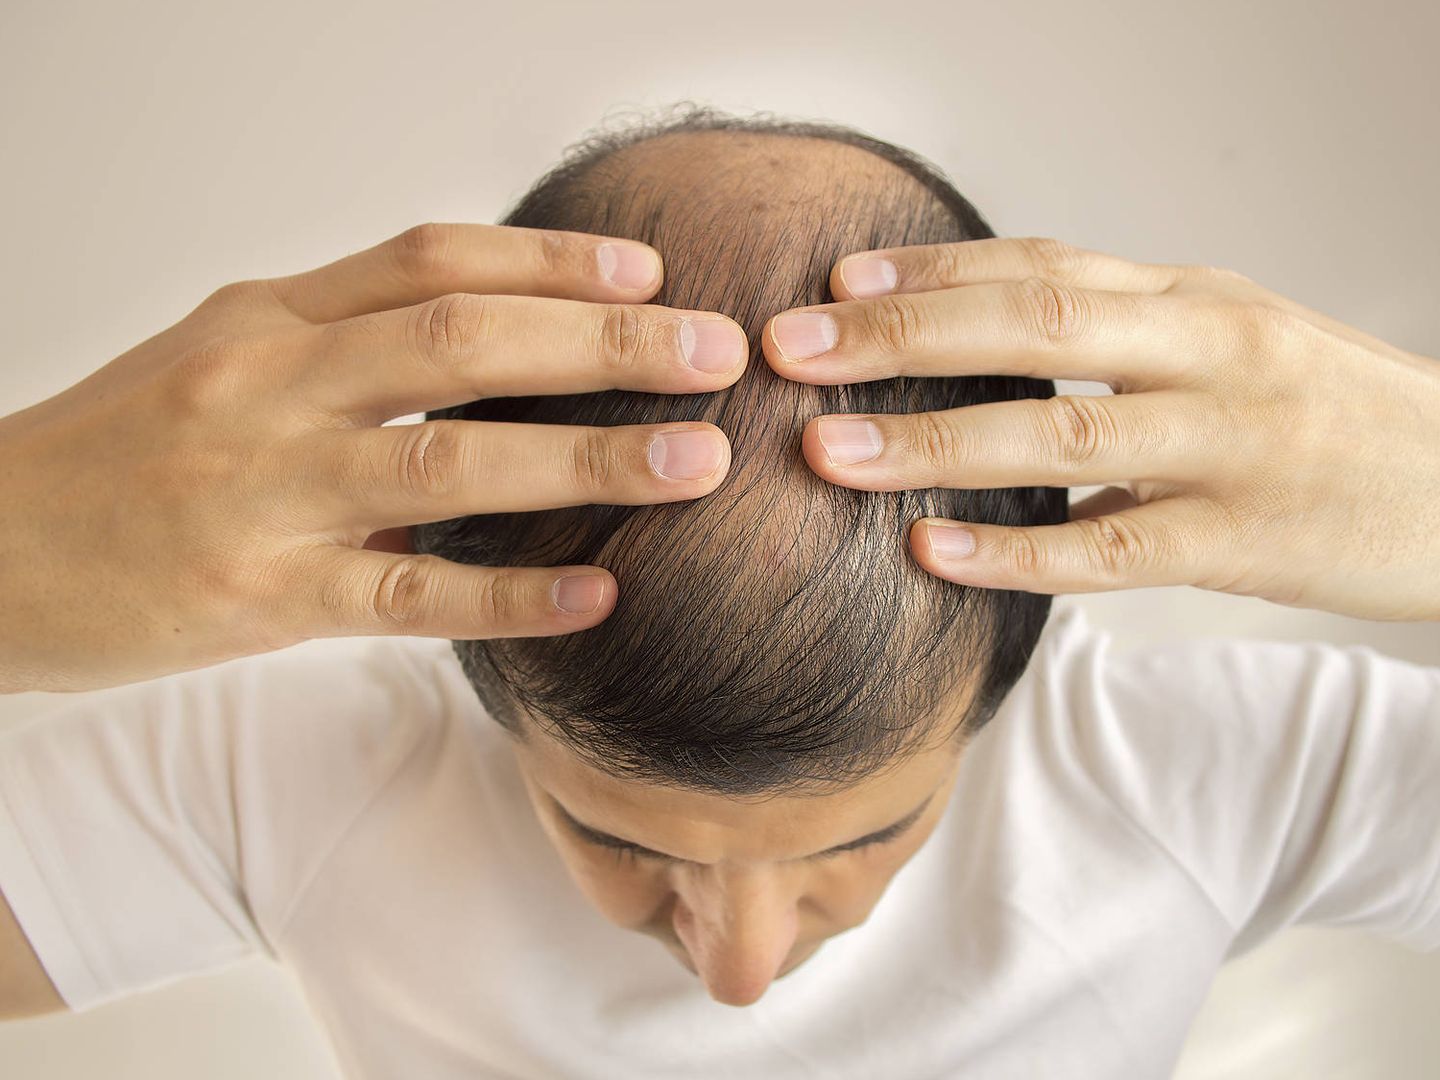 close up of man controls hair loss